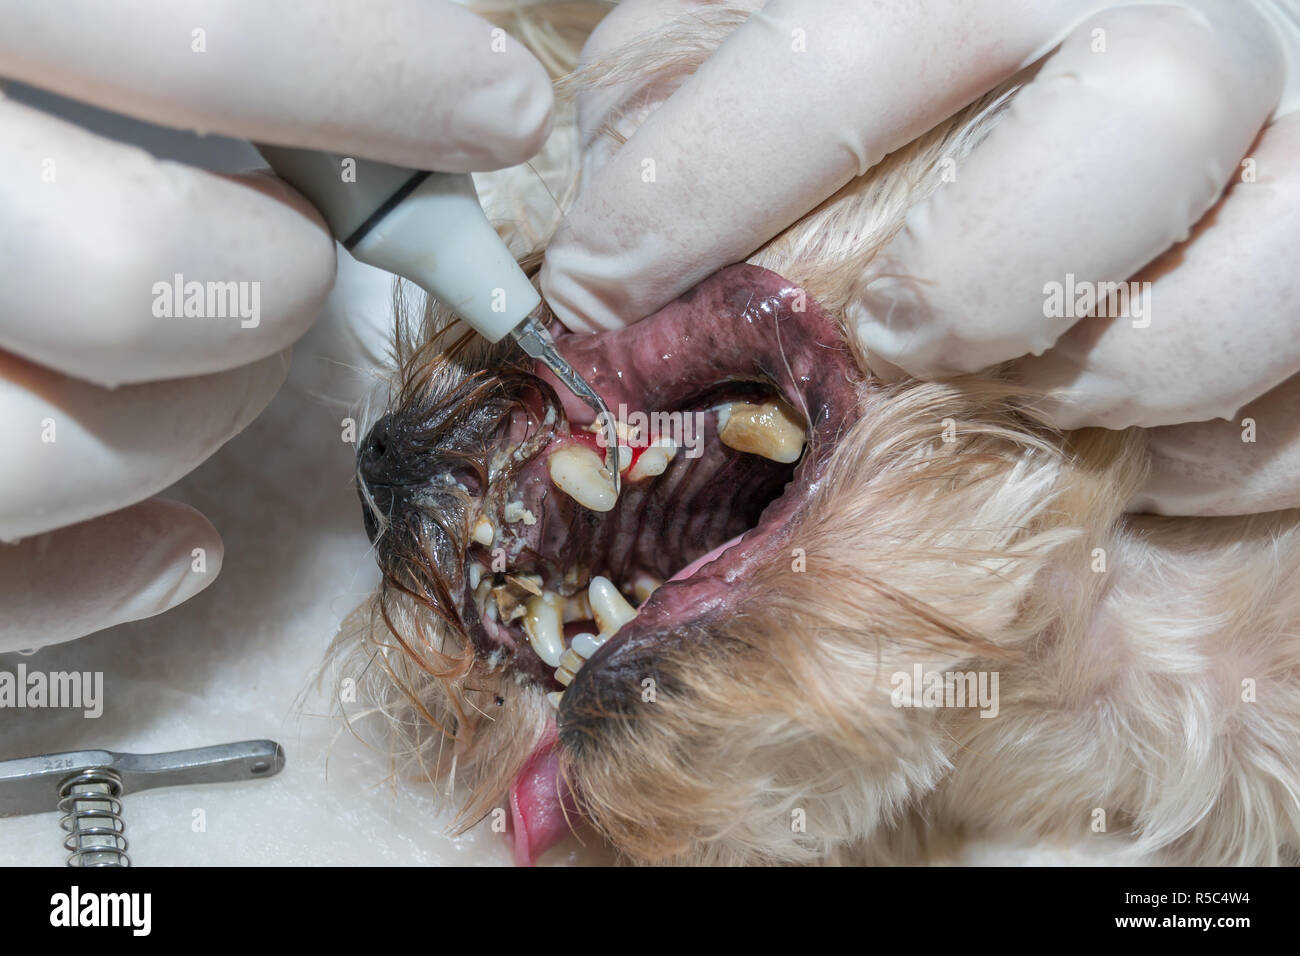 Zahnstein entfernen von Tierarzt. Ultraschall Reinigung. Zähne putzen.  Zahnreinigung Stockfotografie - Alamy